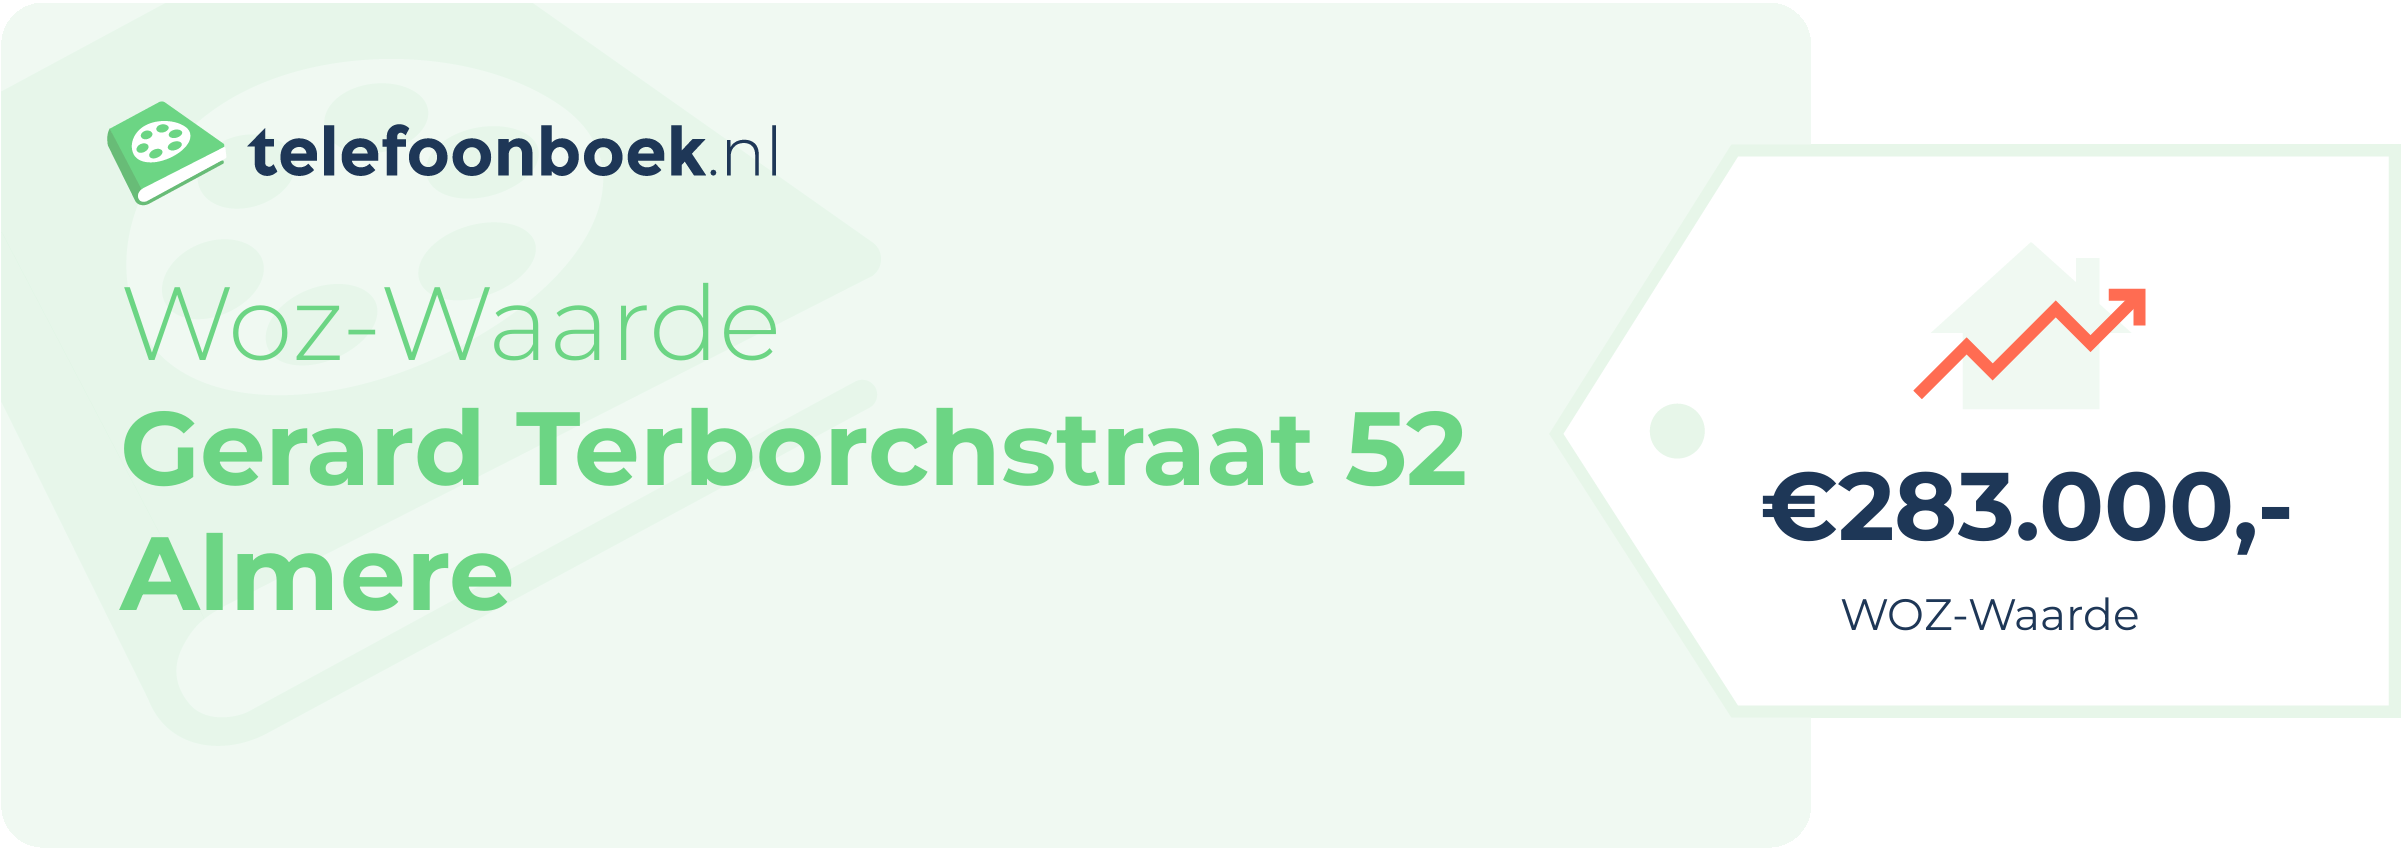 WOZ-waarde Gerard Terborchstraat 52 Almere